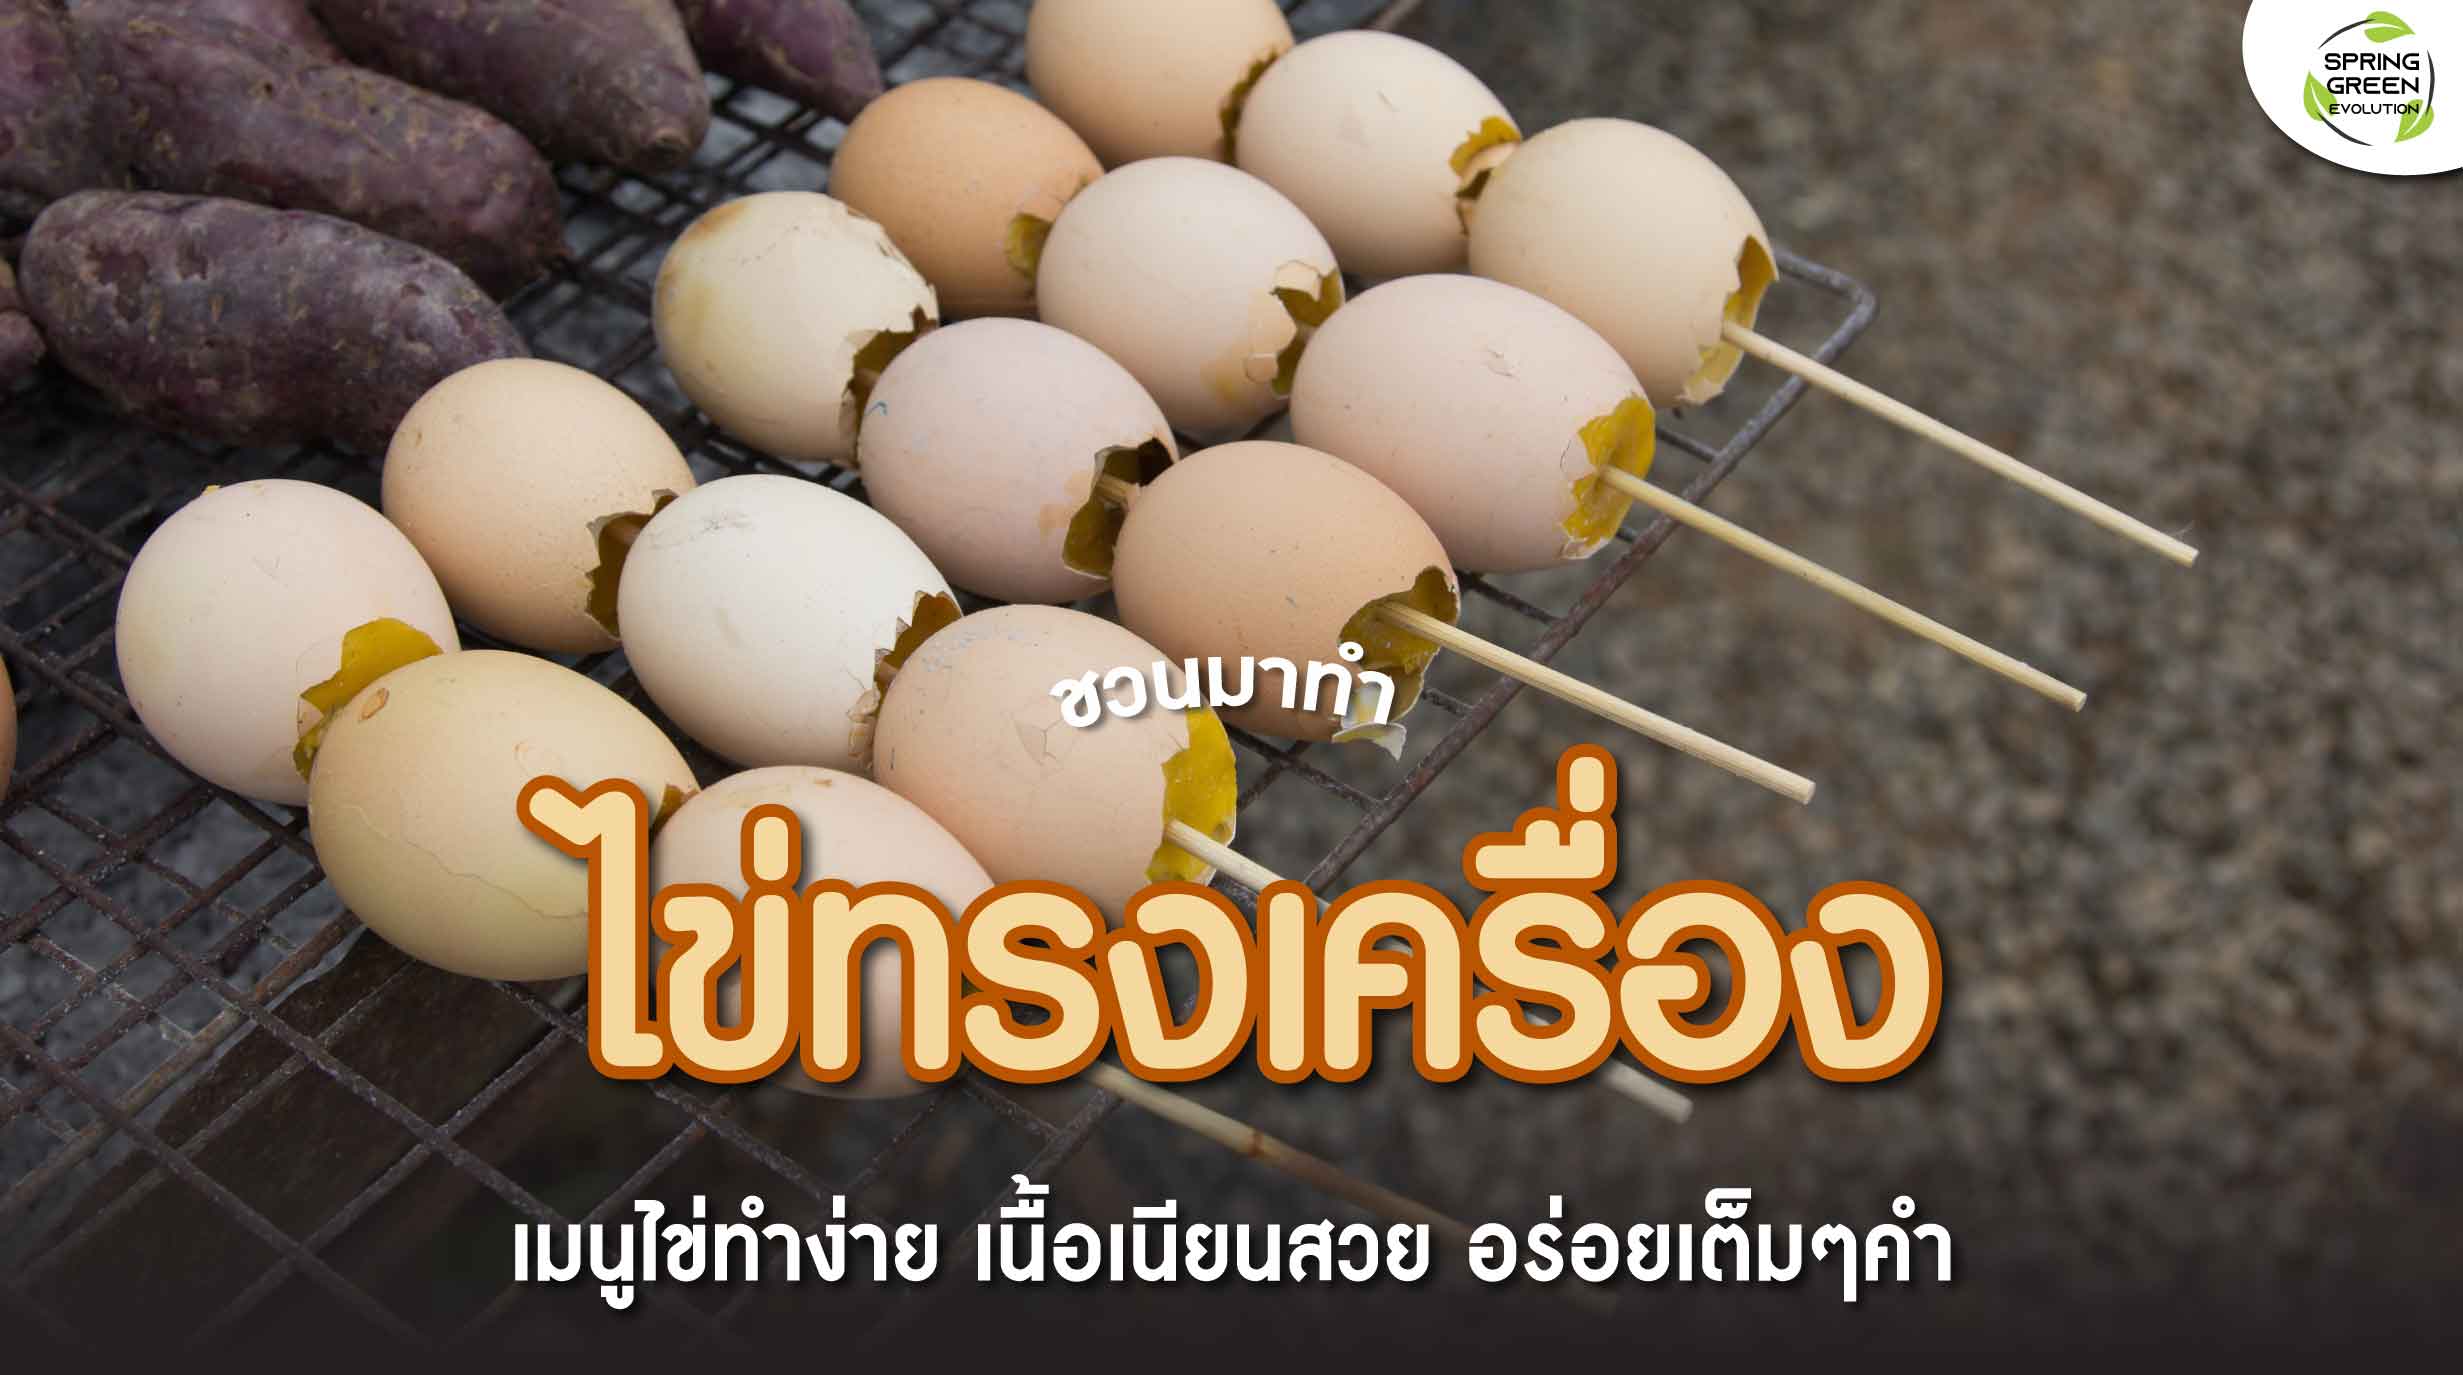 ไข่ทรงเครื่อง เนื้อเนียนสวย วัตถุดิบน้อย อร่อยง่ายๆ ทำได้ไม่ยาก